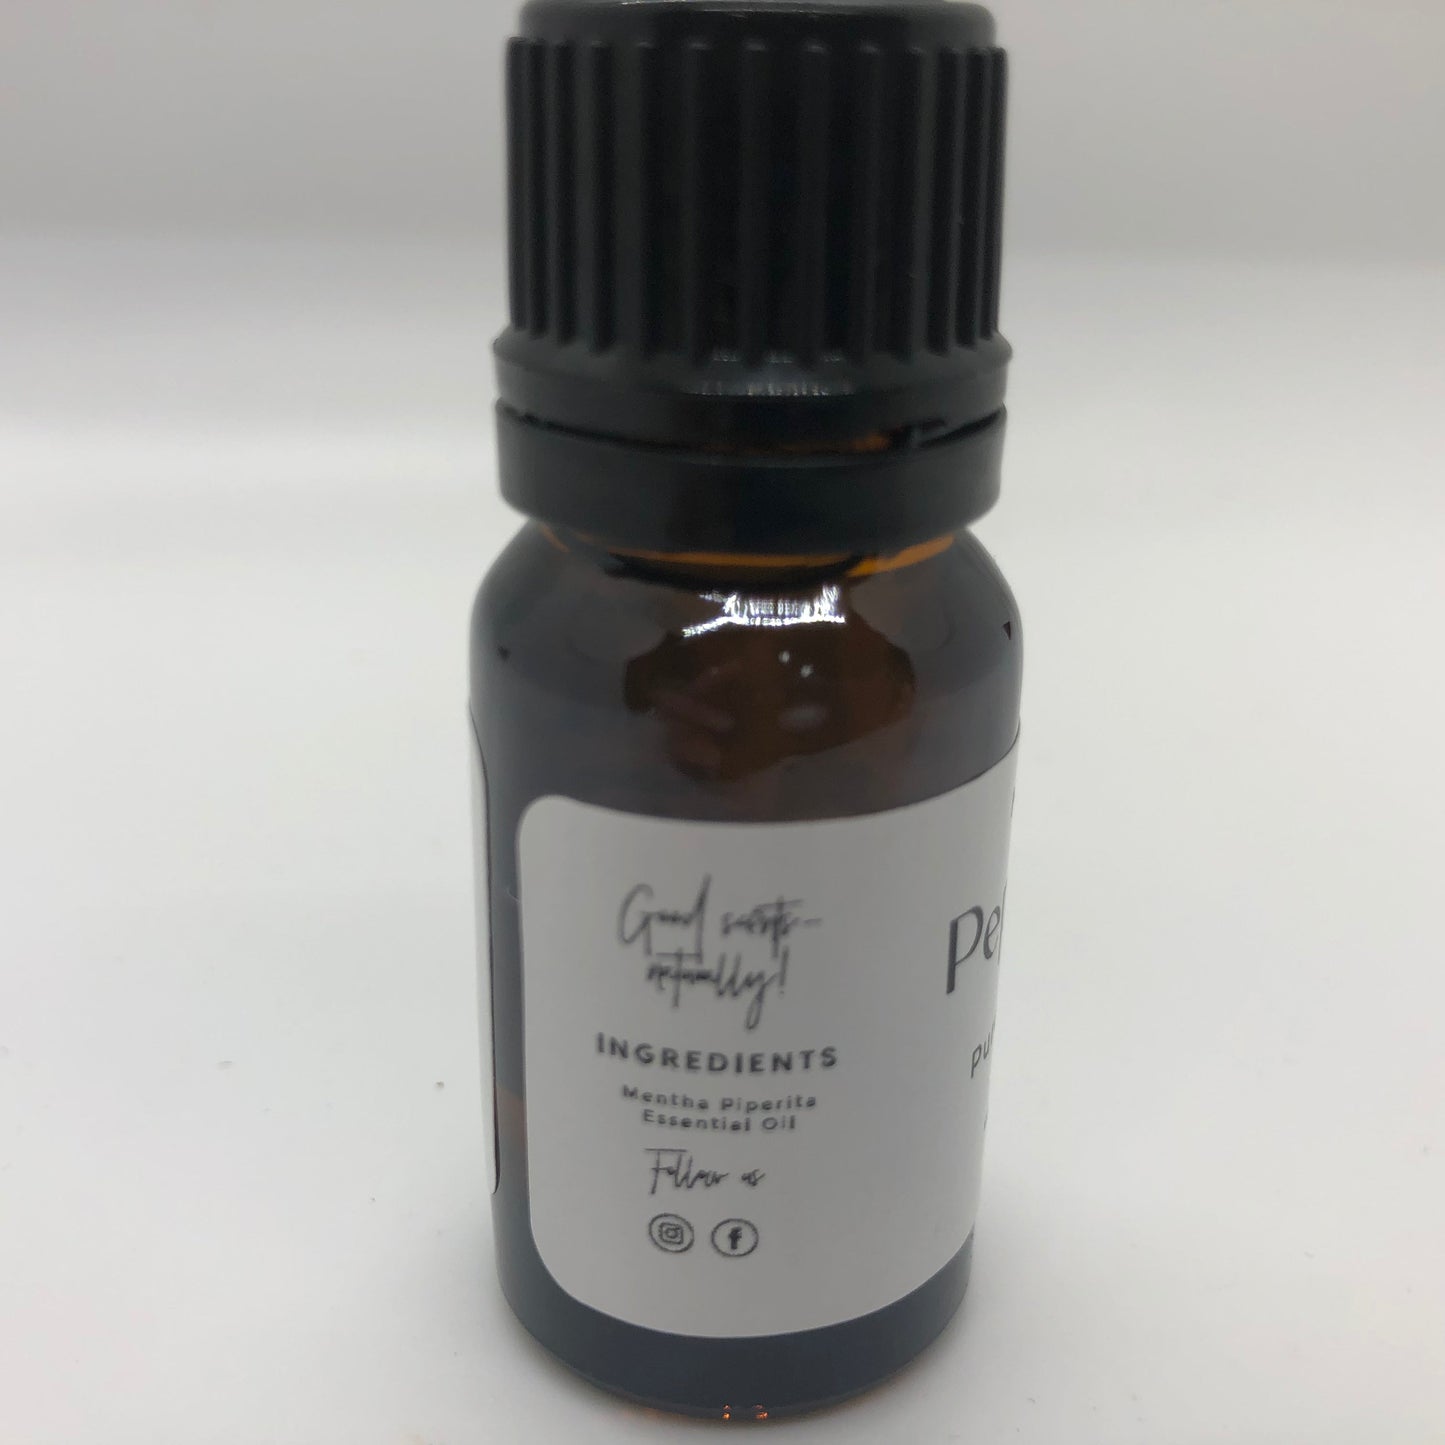 Peppermint Essential Oil - 10 ml - .35 oz